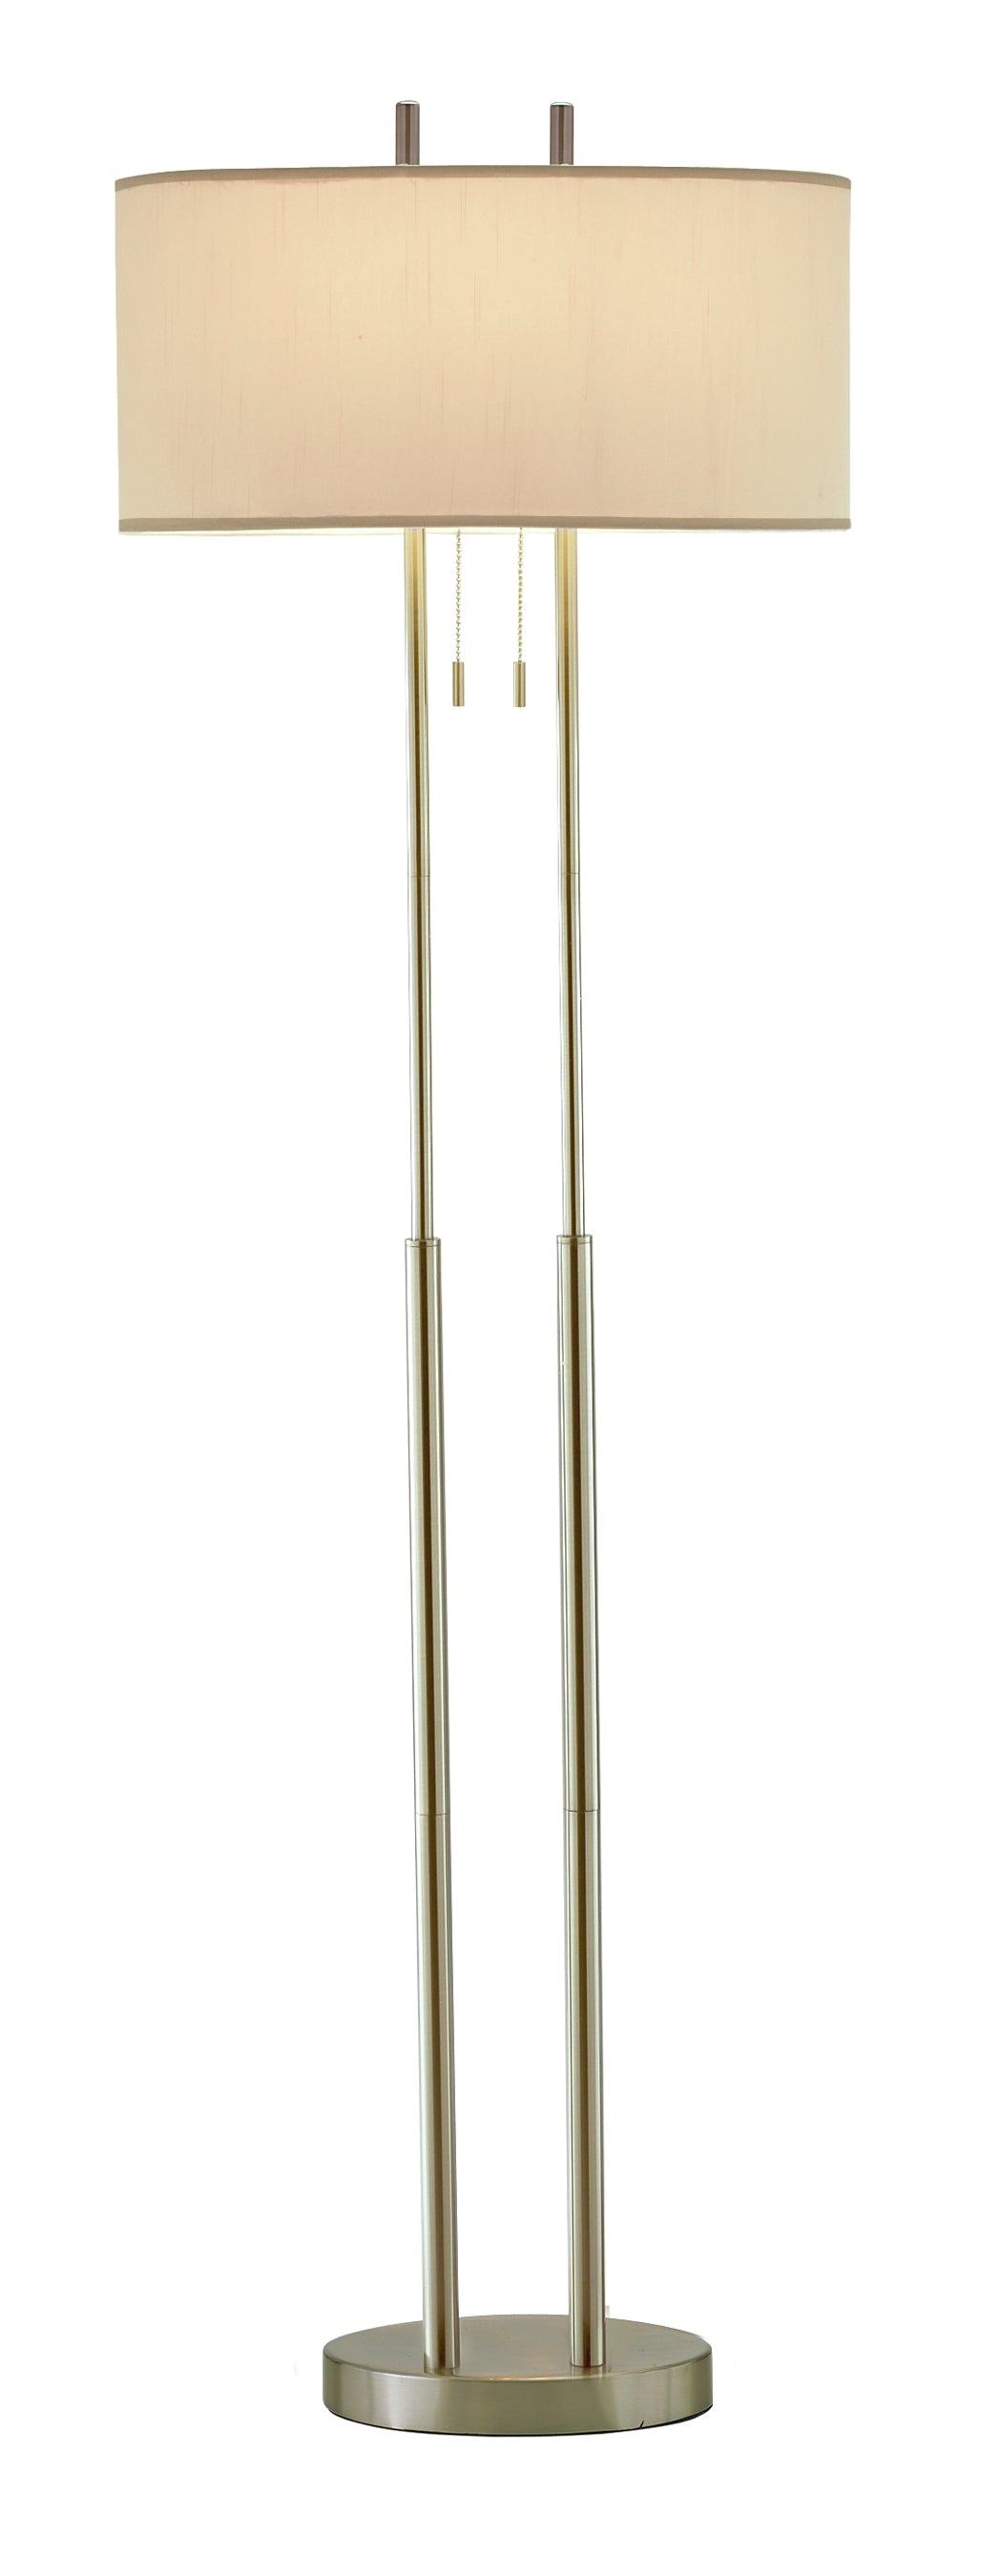 Dual Pole Floor Lamp In Brushed Steel Metal